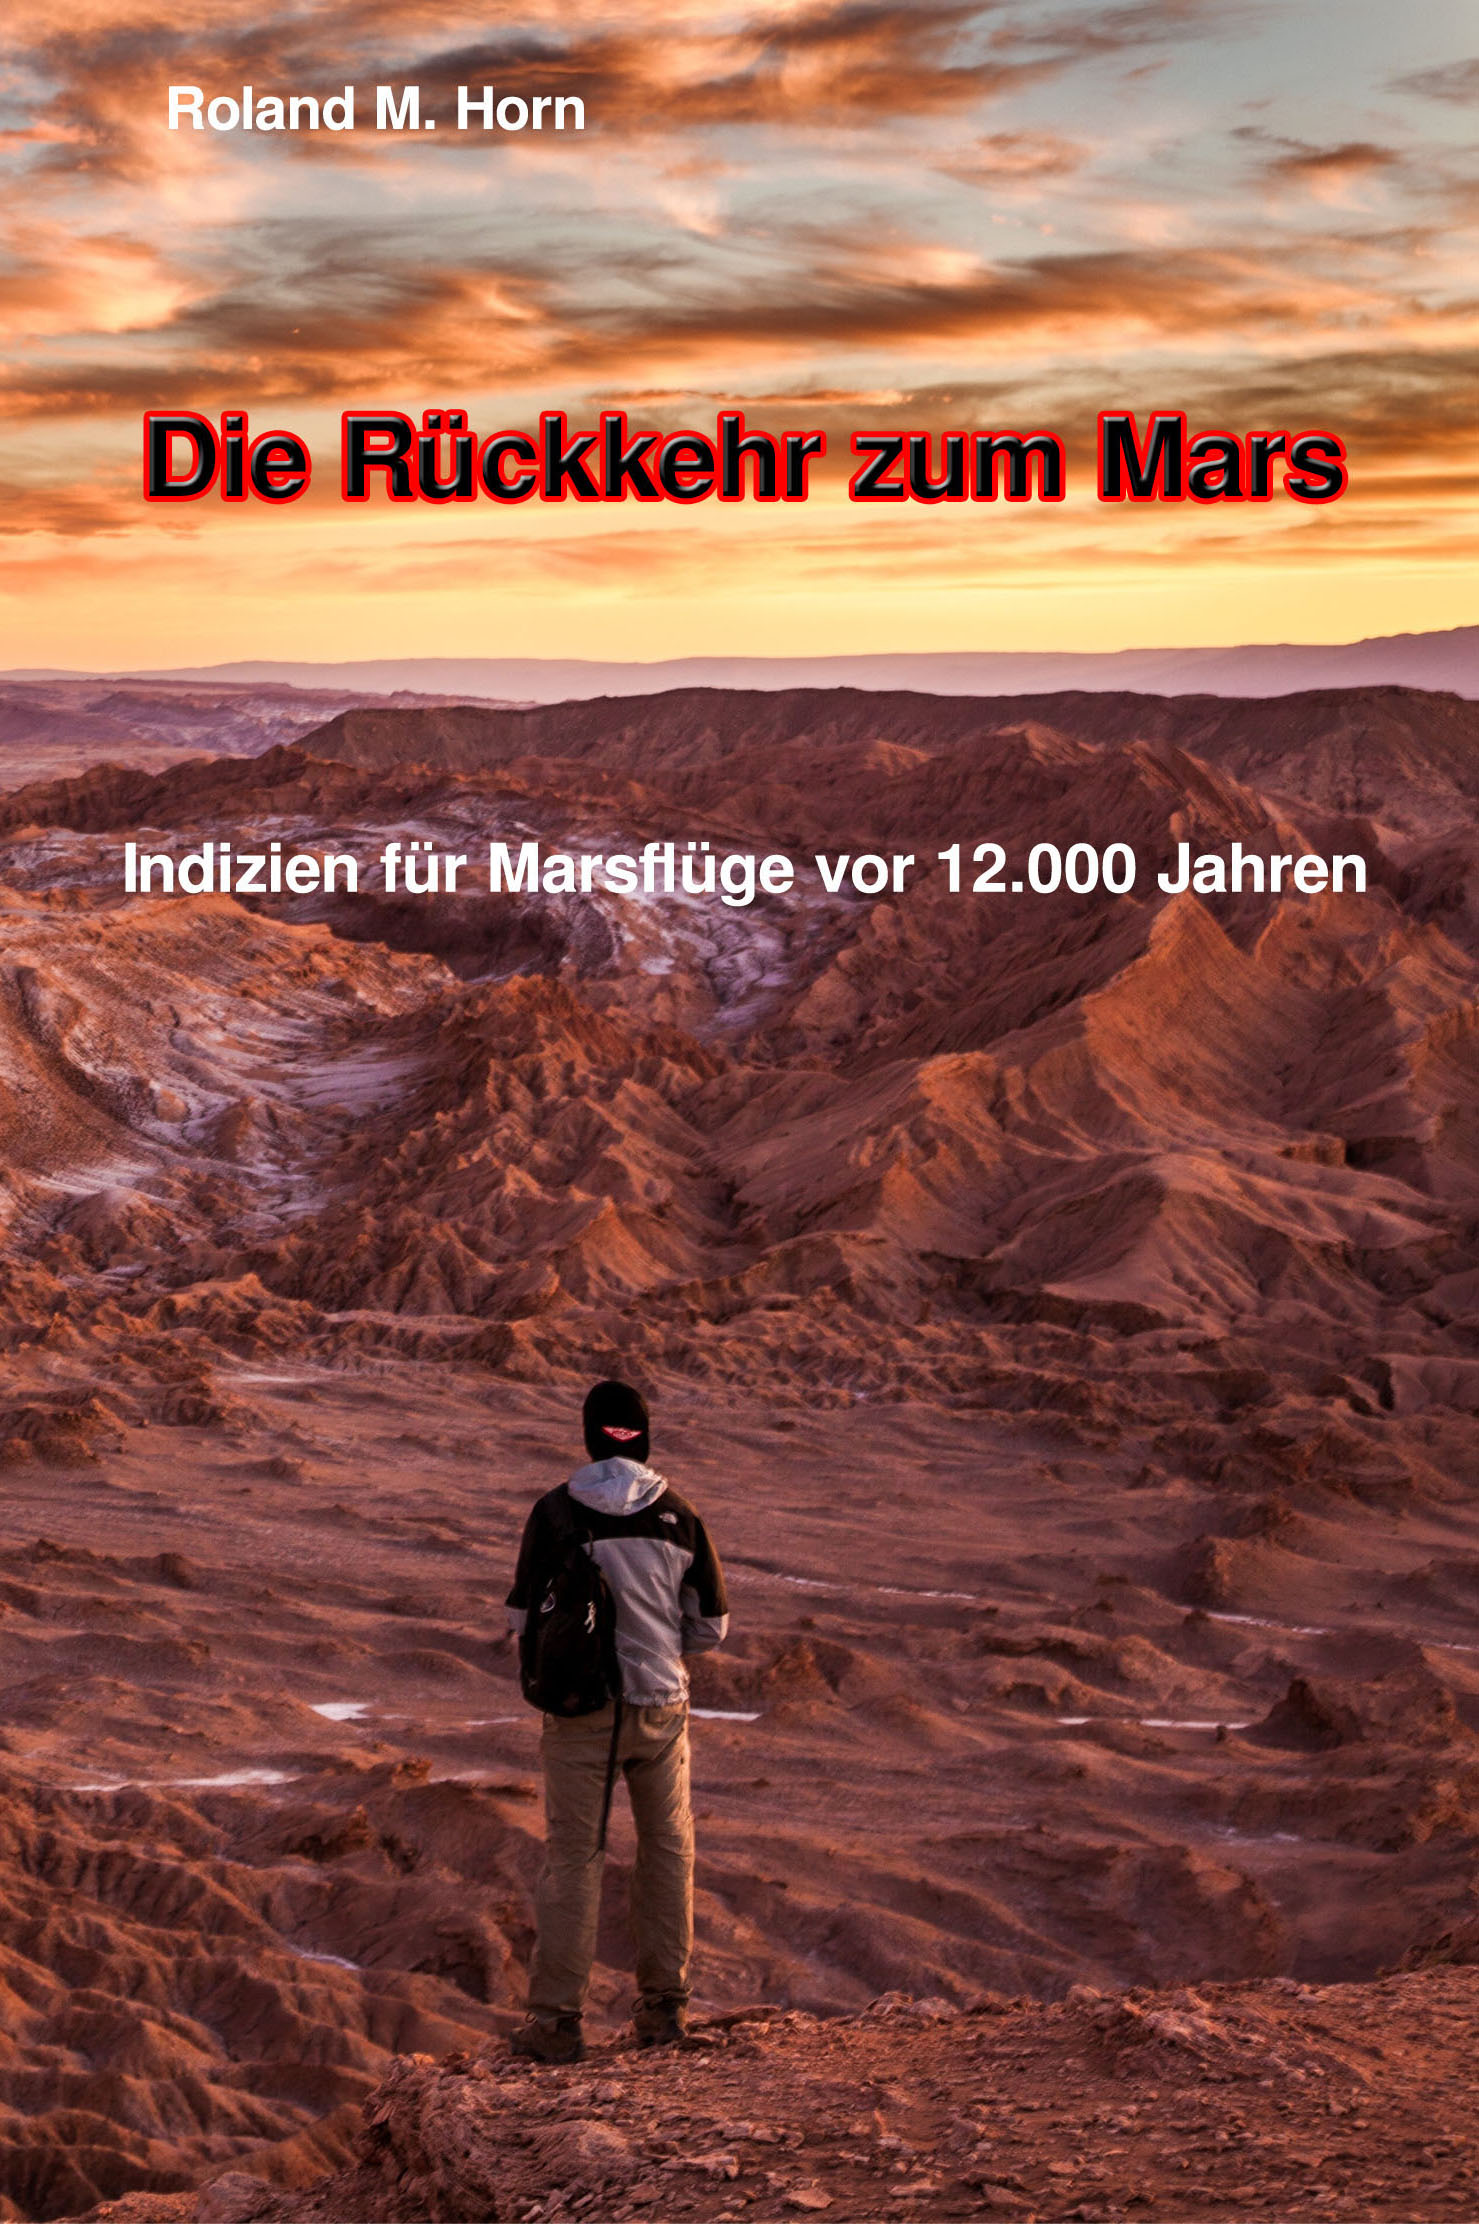 Rückkehr zum Mars: Indizien für Marsflüge vor 12.000 Jahren